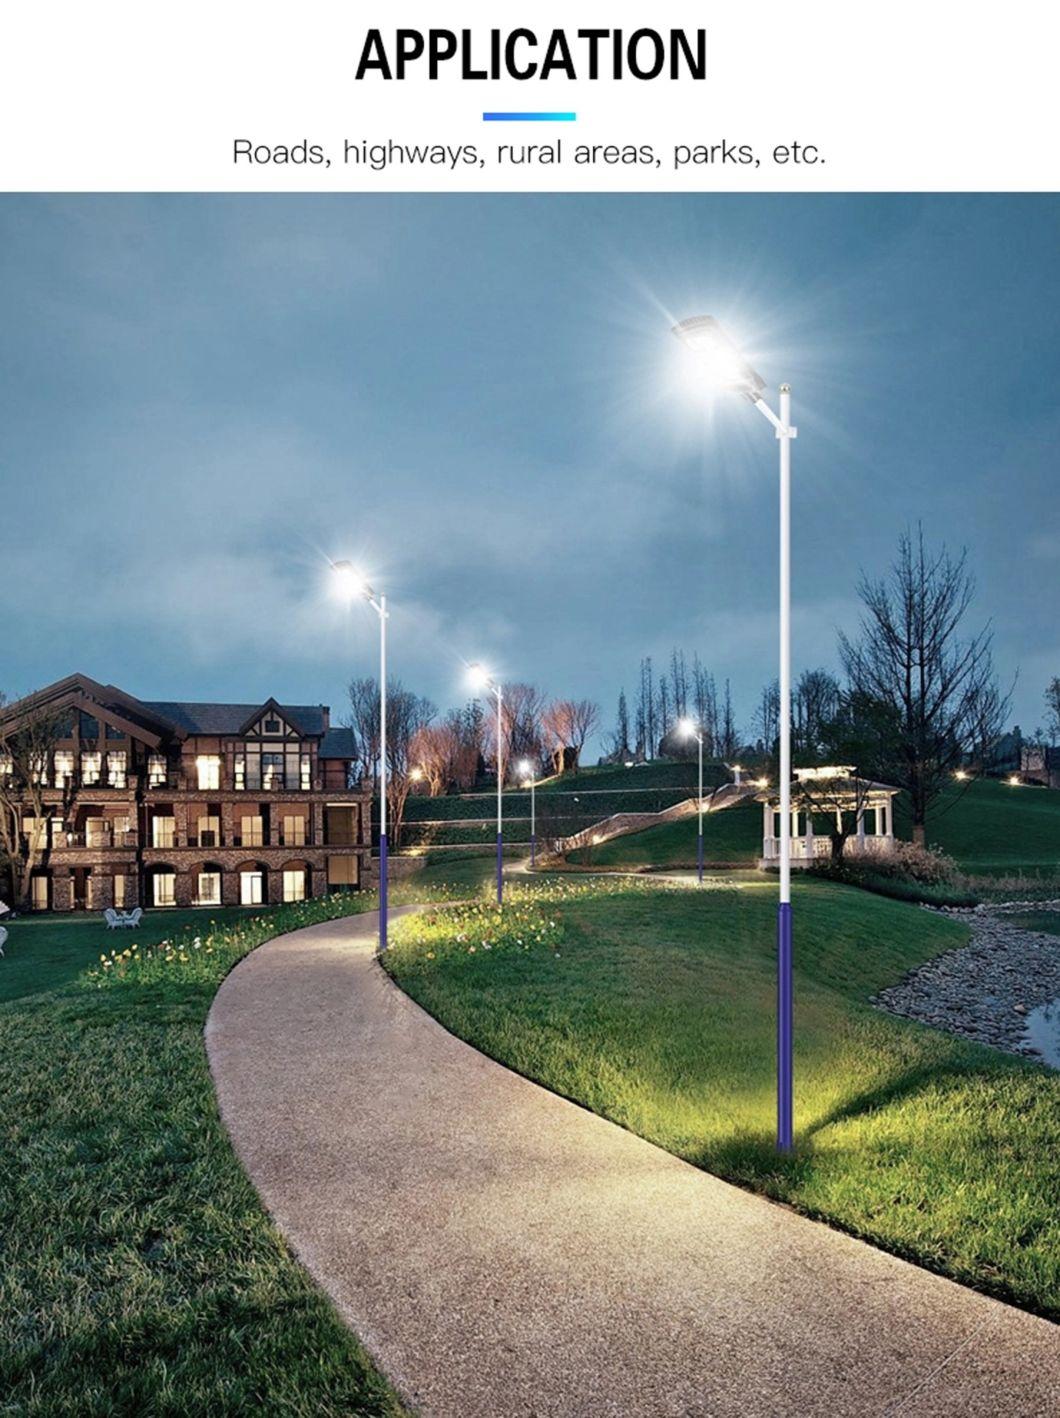 Landscape Road Hotel Residential Garden All in One Motion Sensor Solar LED Street Light